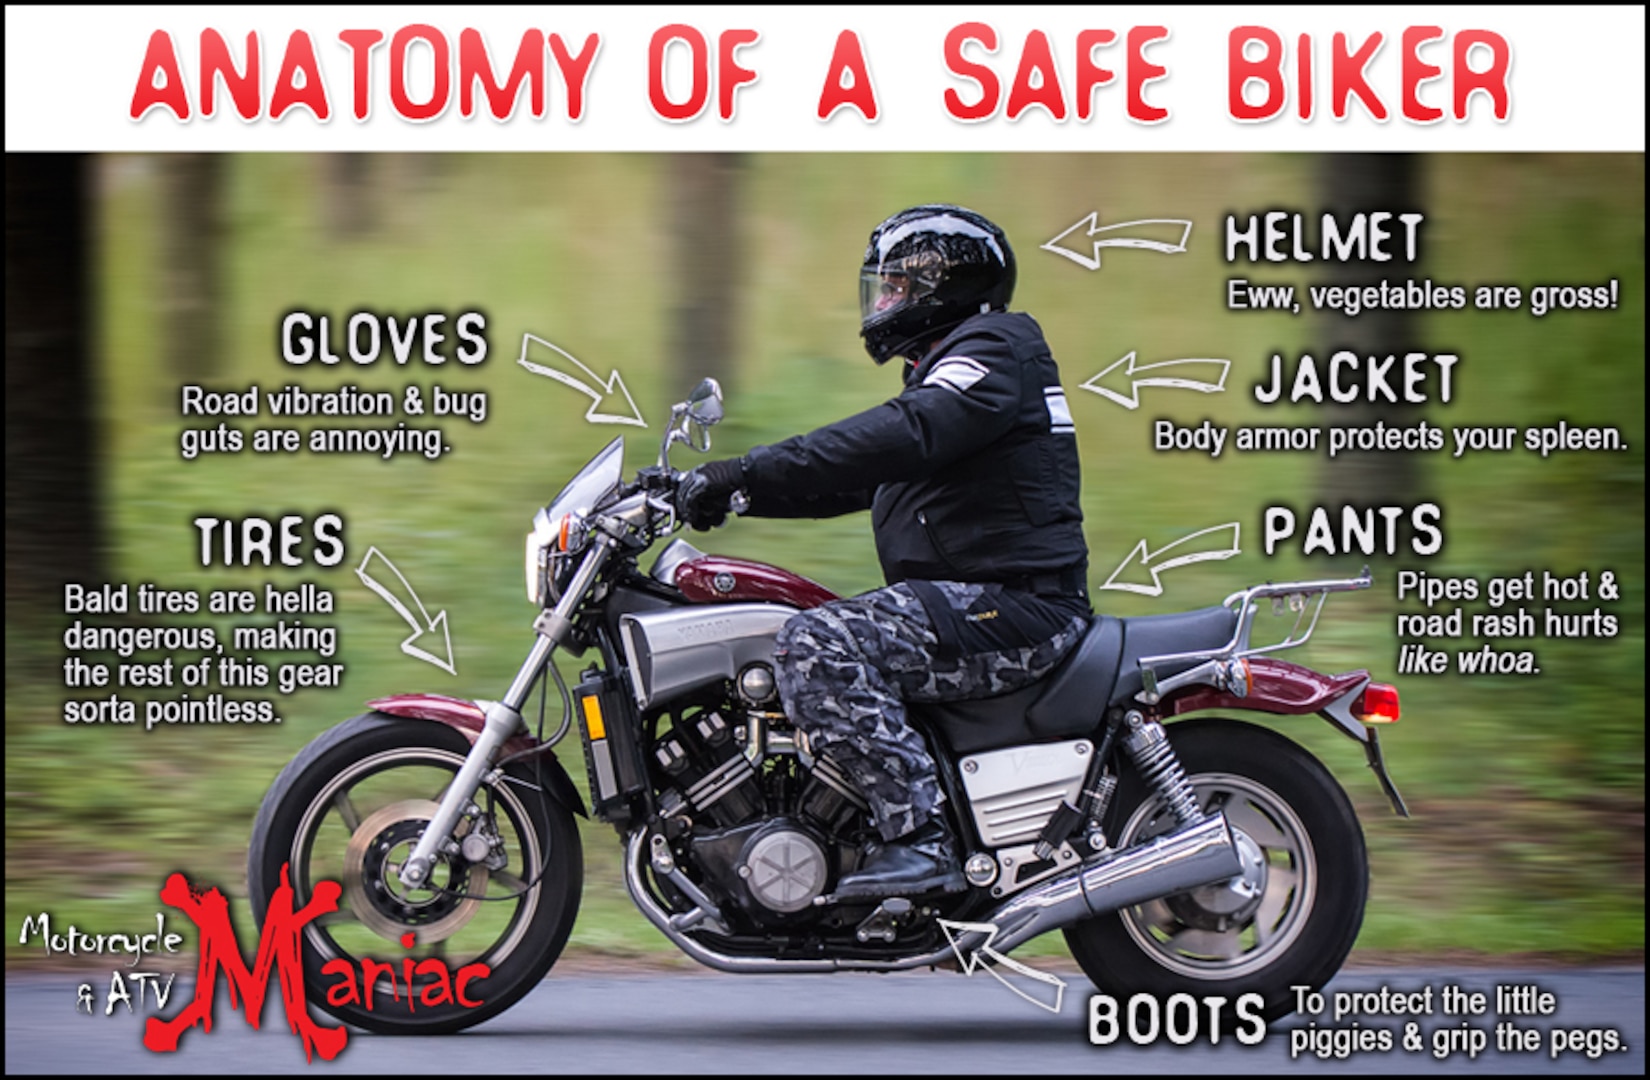 Usaf Motorcycle Helmet